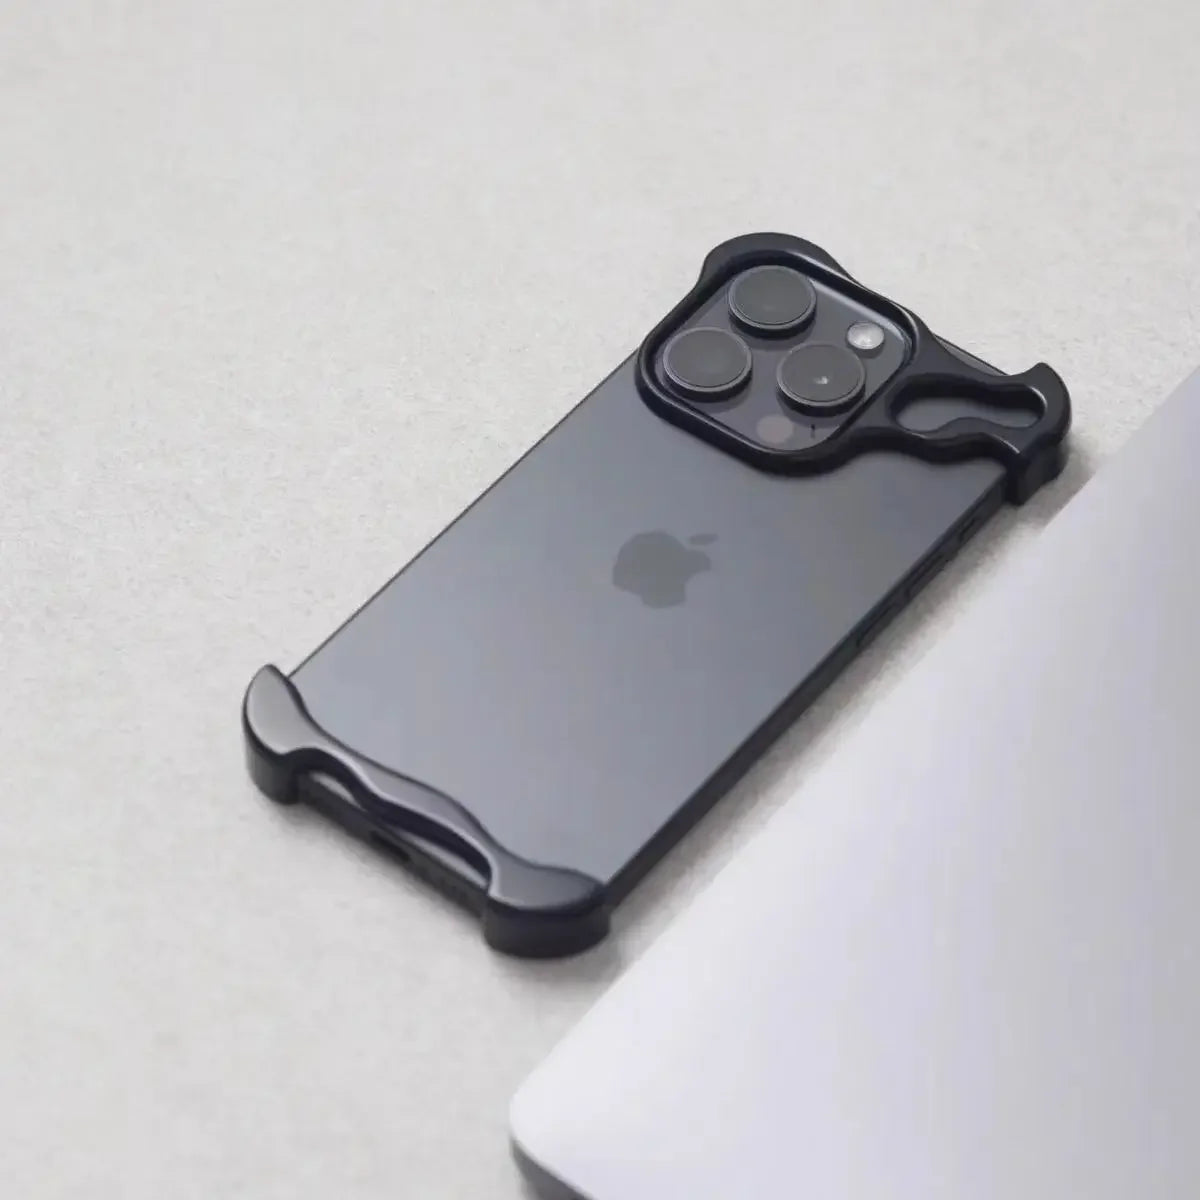 Irregular Aluminum Iphone Case